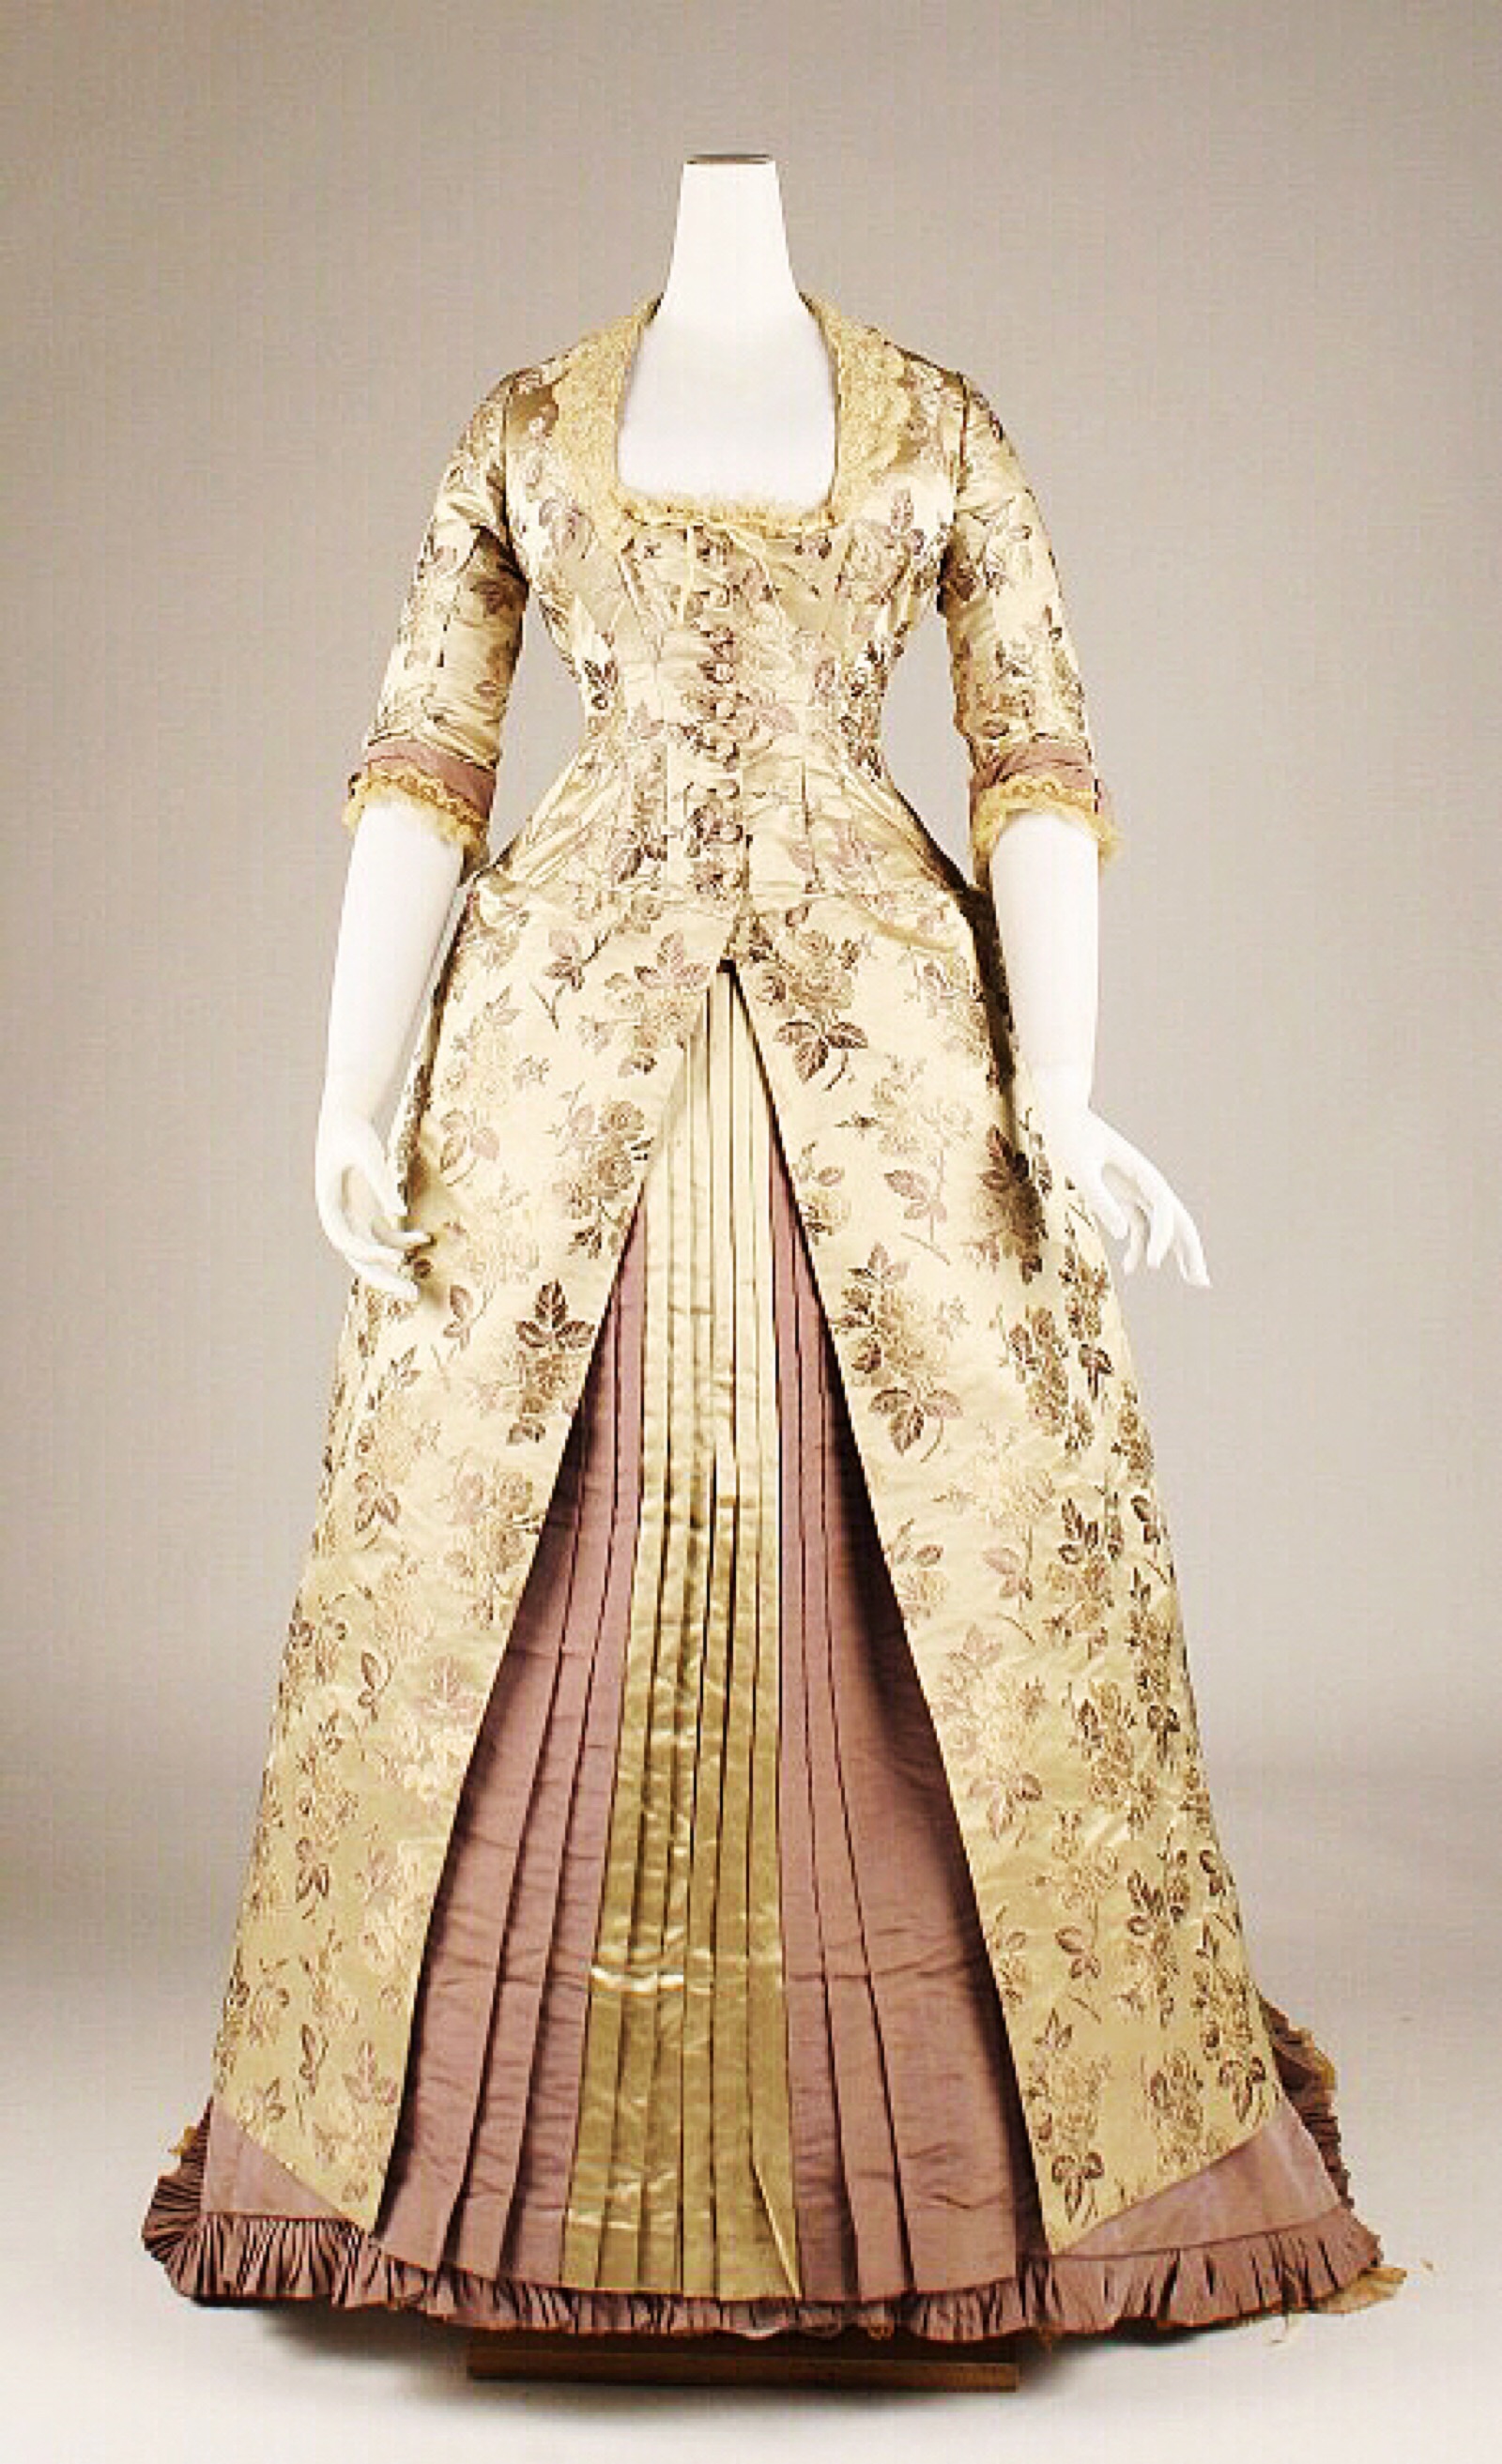 维多利亚时期的礼服(1837